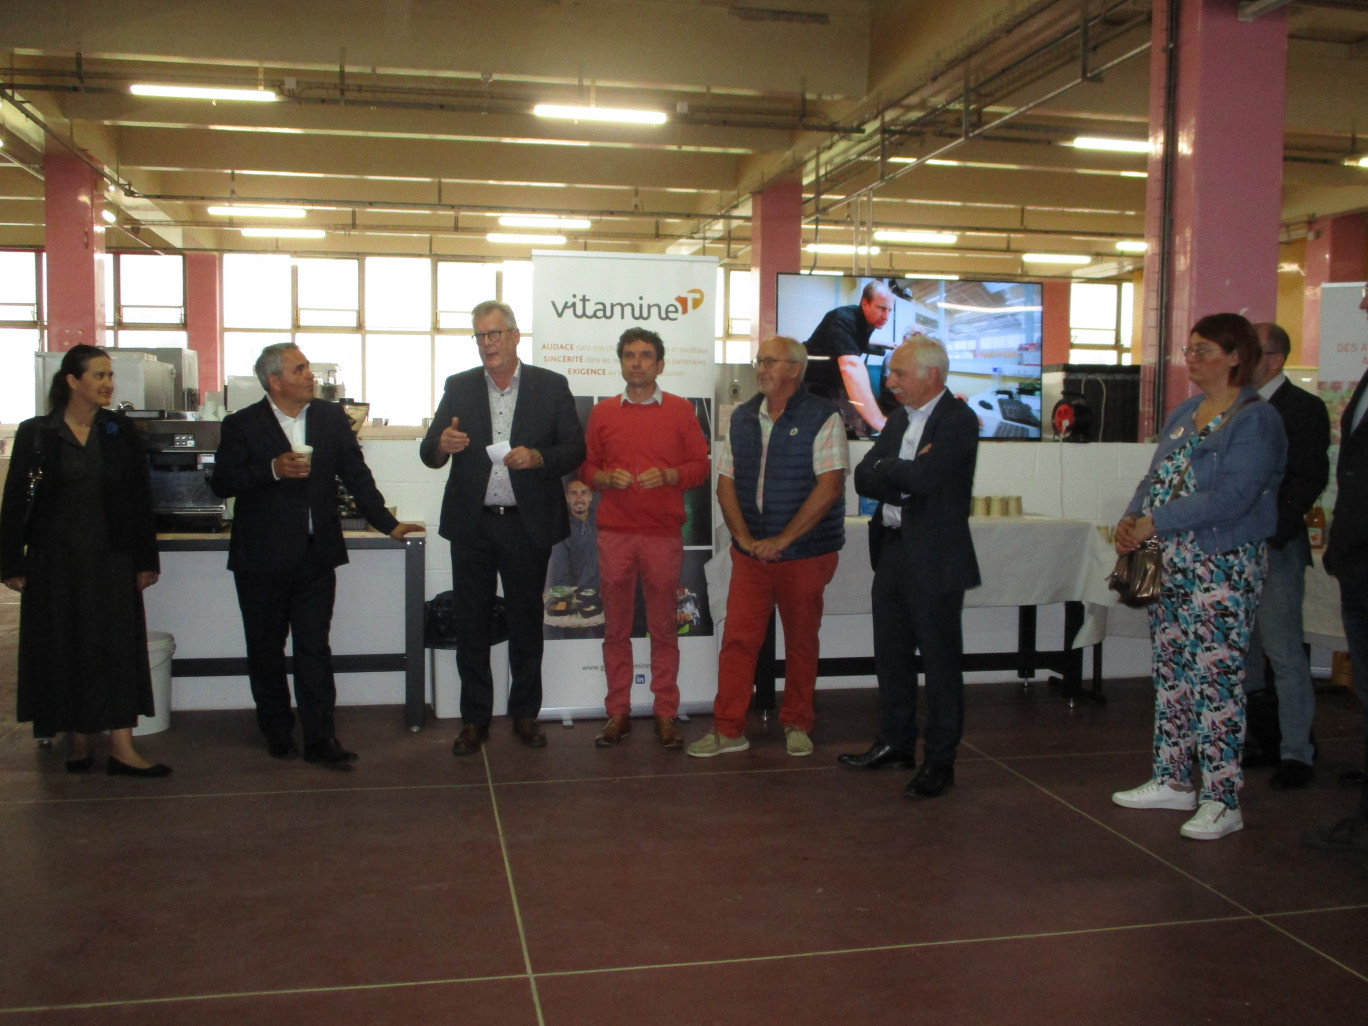 L'inauguration s'est déroulée en présence des responsables du groupe Vitamine T et du président de Région, Xavier Bertrand. 